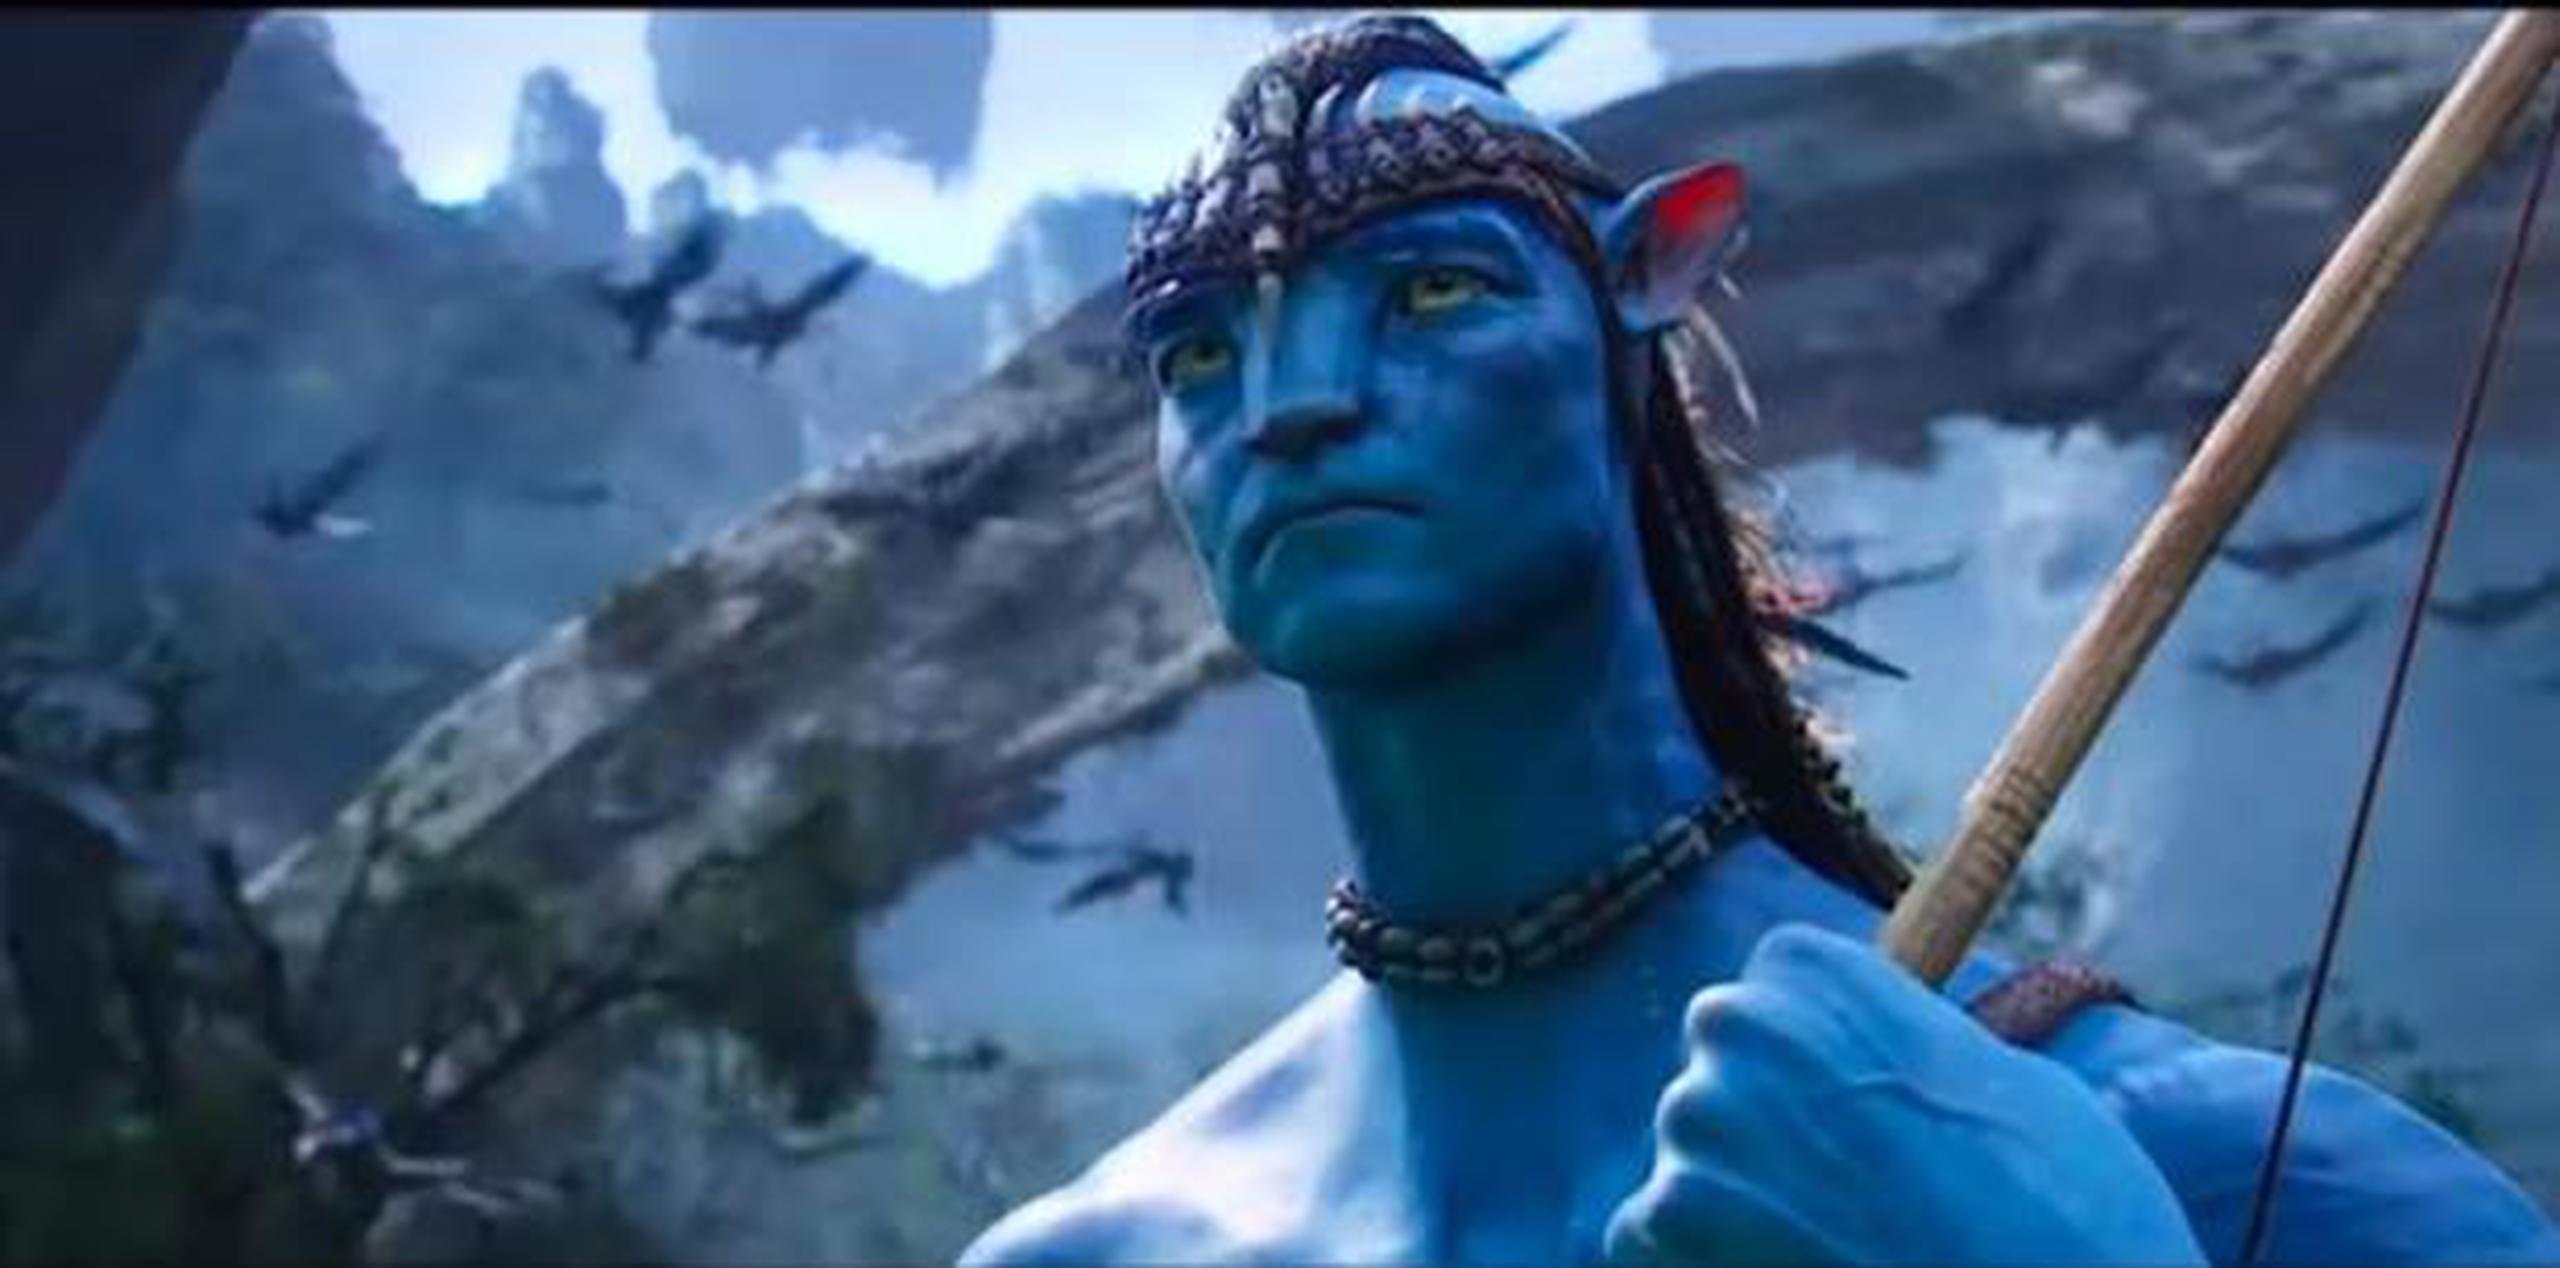 El esperado esperado estreno de "Avatar" ha sido aplazado hasta 2021. (Captura)